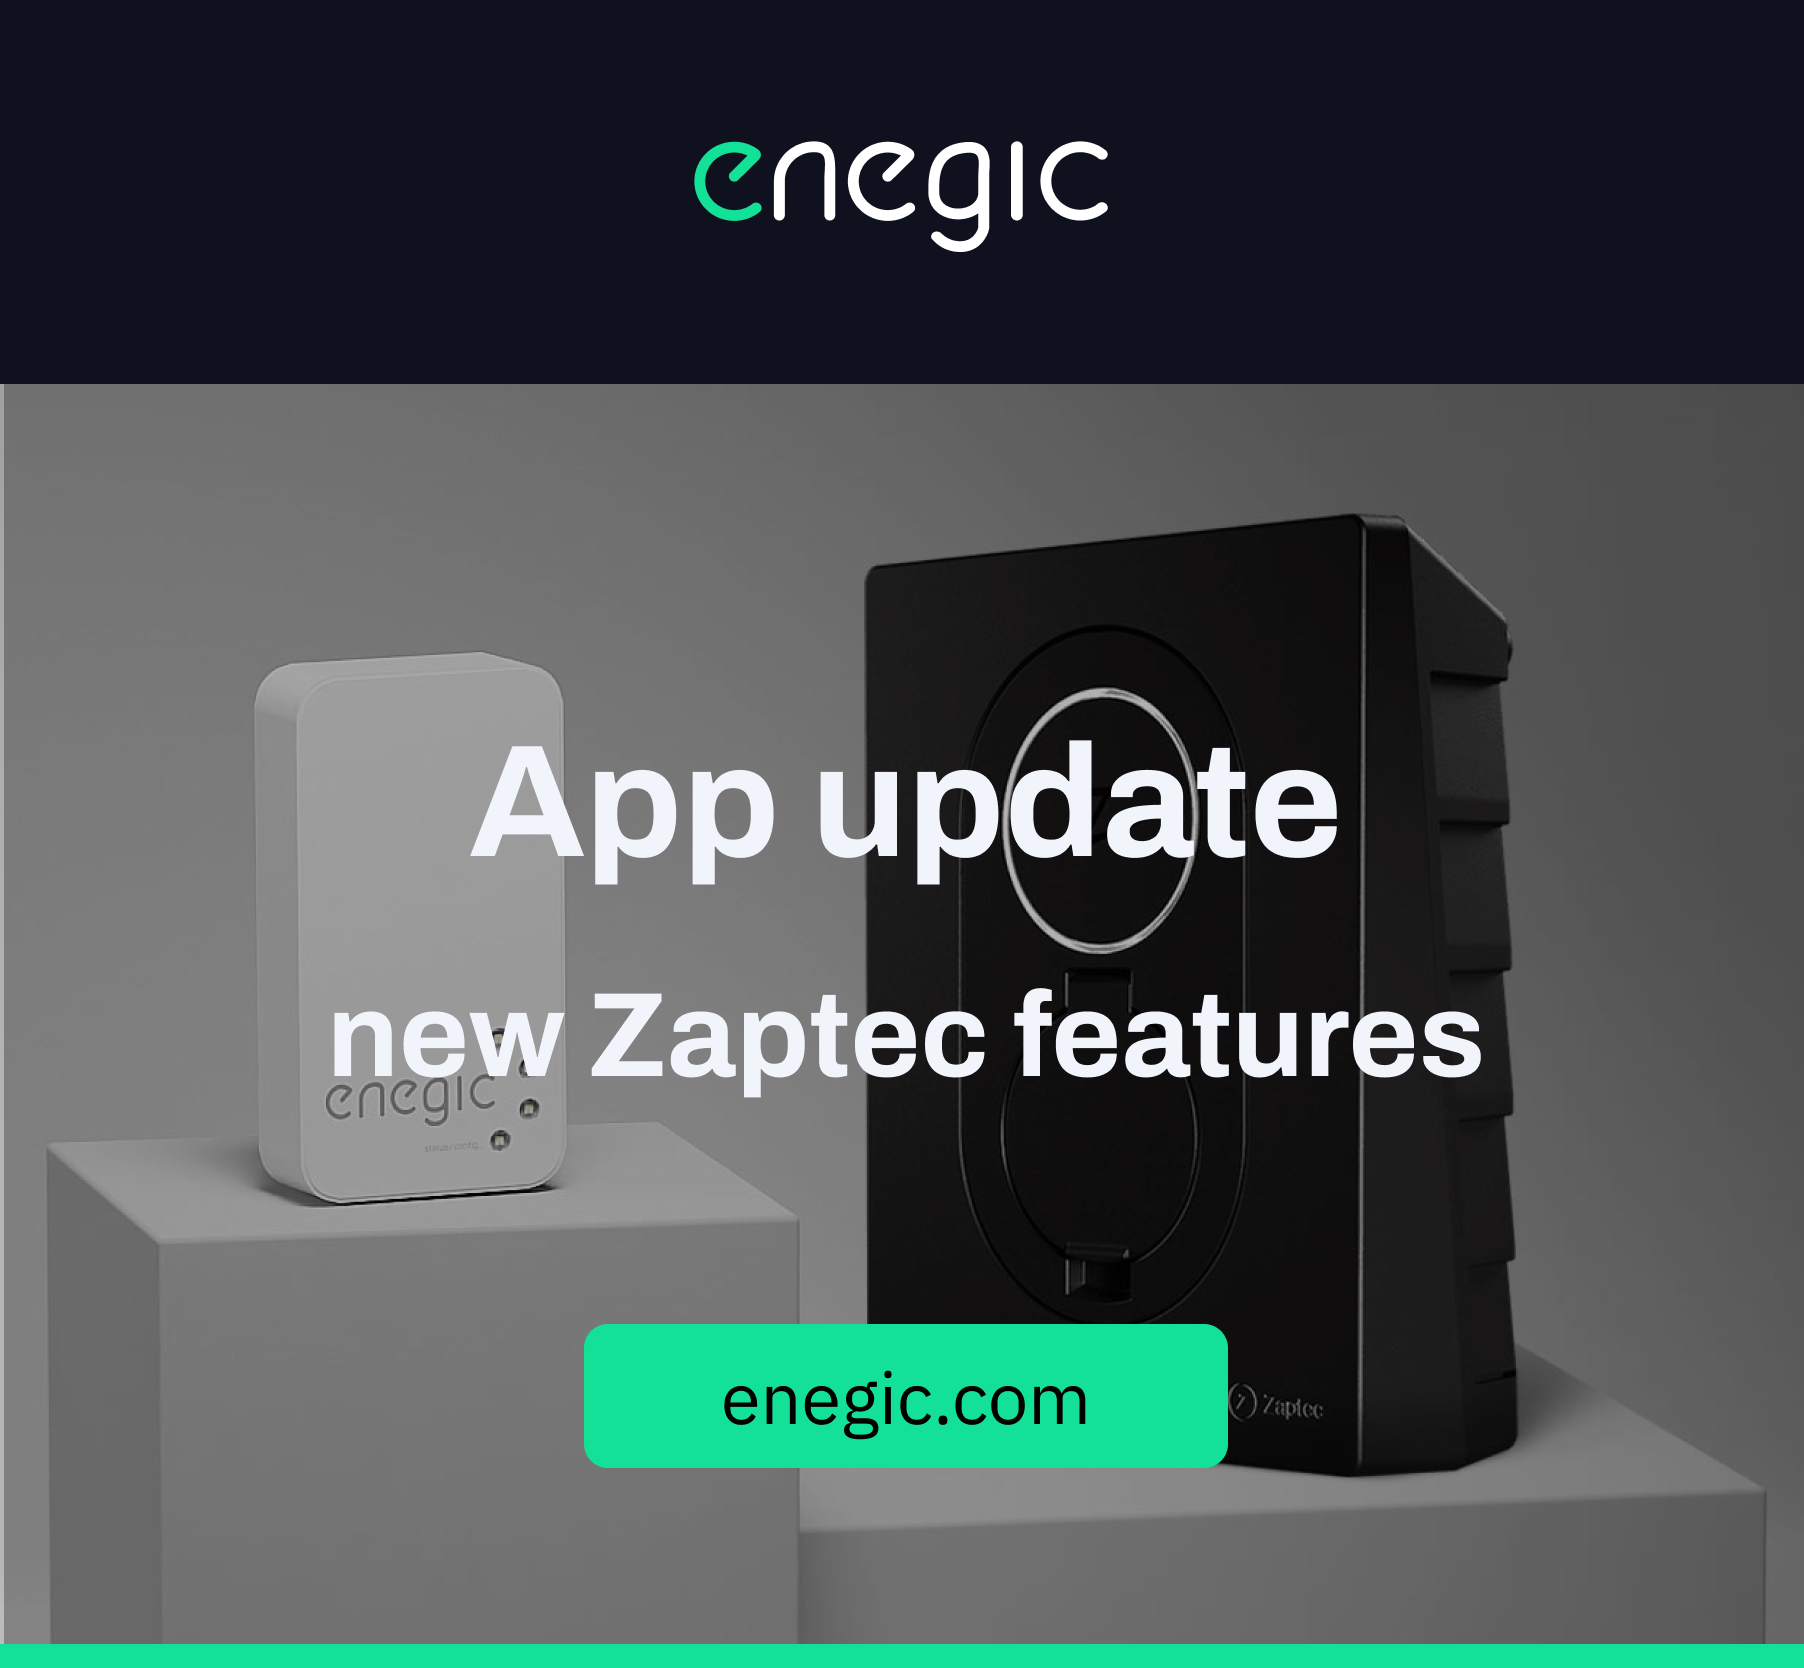 App update, new Zaptec features.